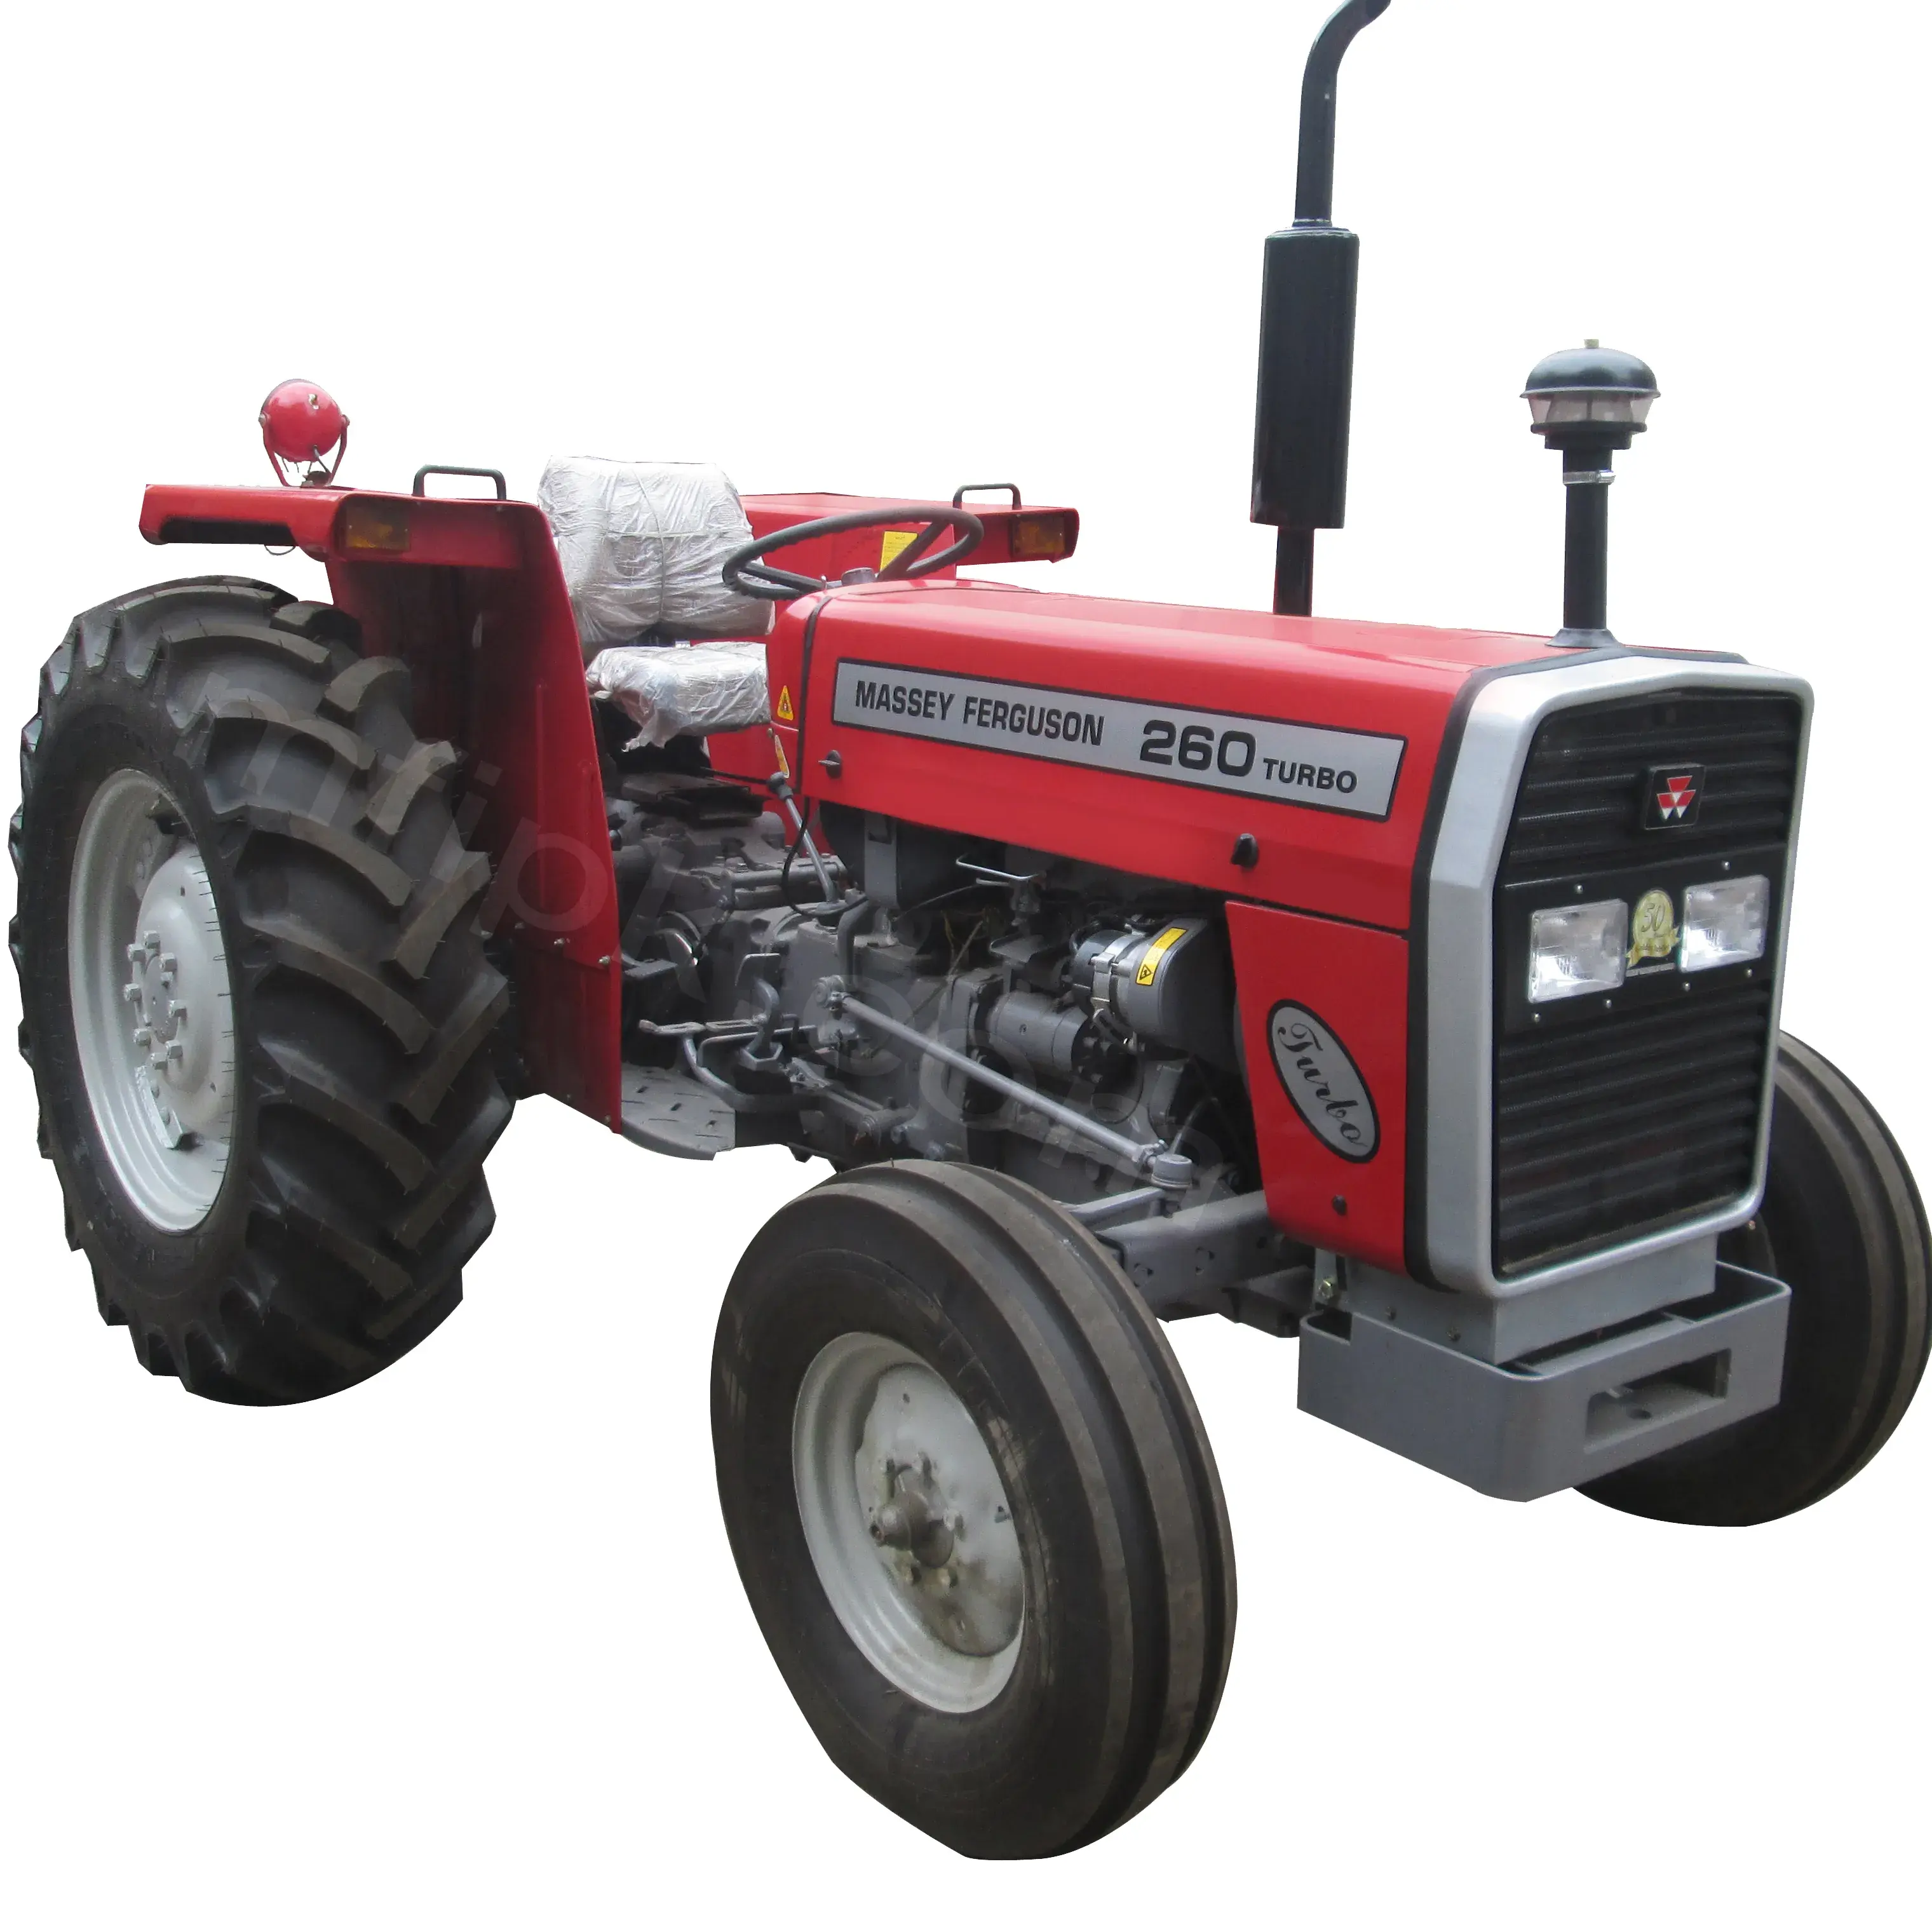 Orijinal Massey Ferguson MF 165 MF 185 MF 275 2wd traktör tarım makineleri Massey Ferguson traktör tarım traktörleri satılık